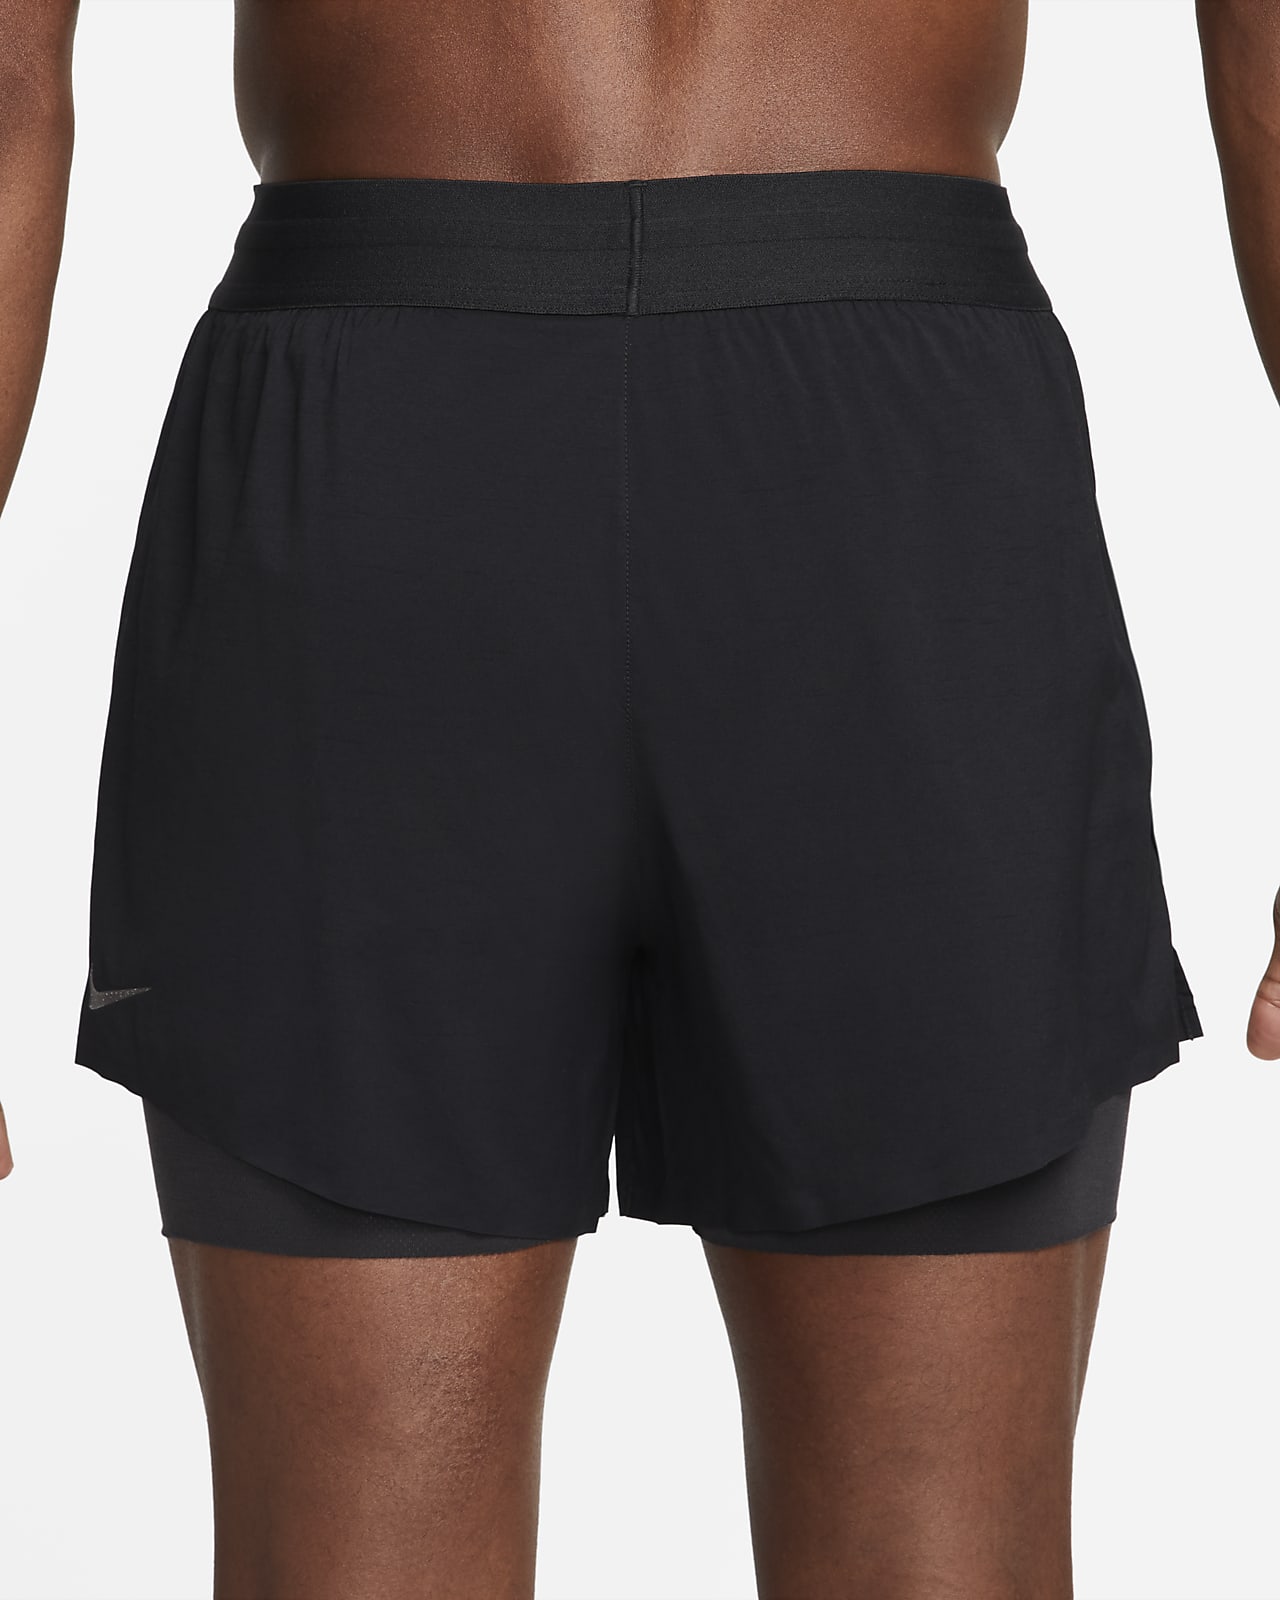 Nike Yoga Men's Hot Yoga Shorts. Nike.com